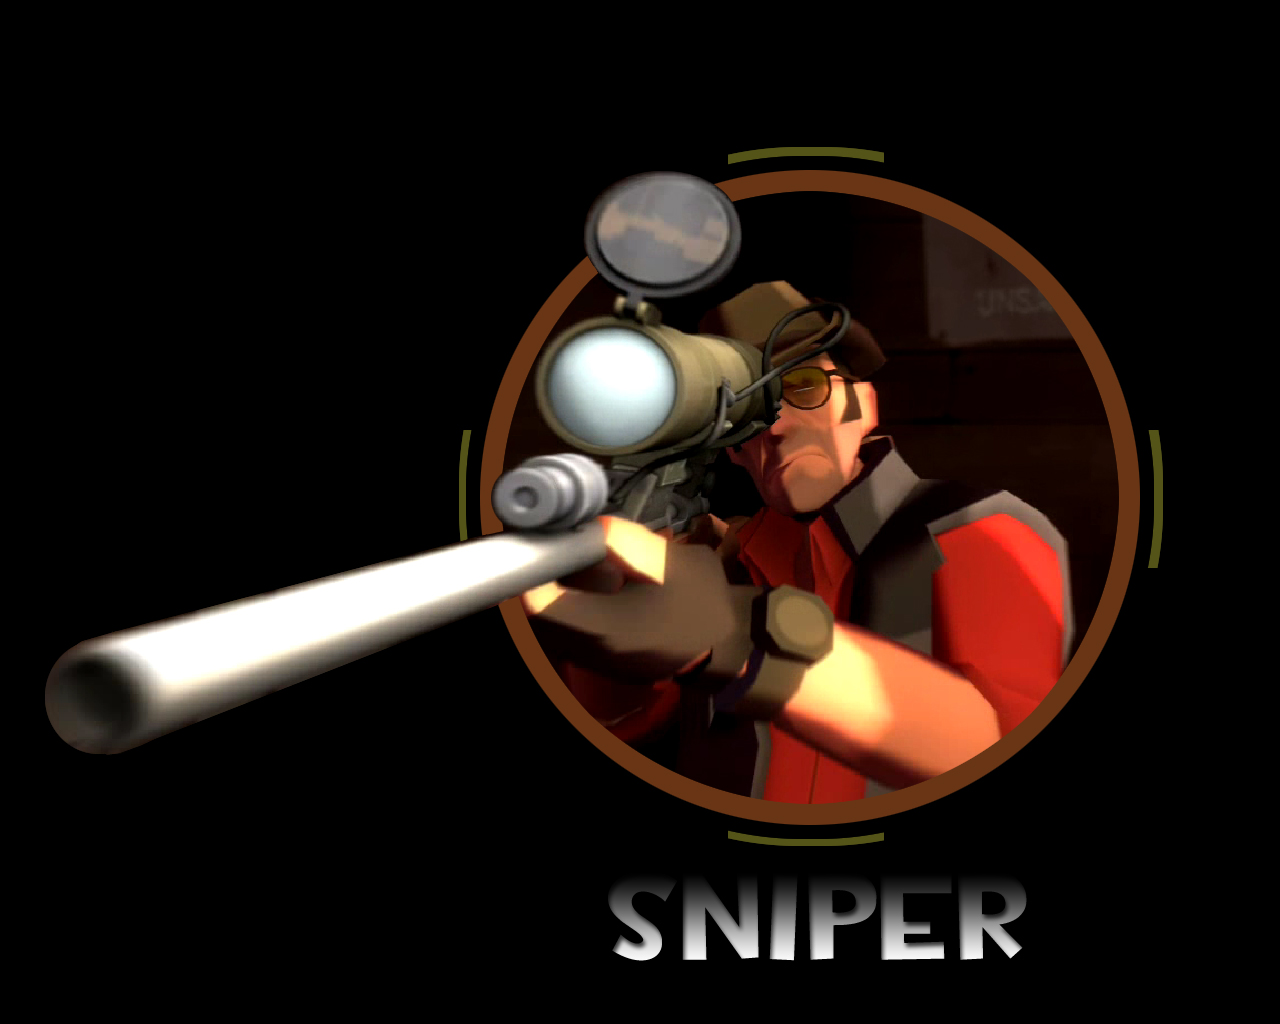 Tf2 Sniper Wallpaper Hd Tf2 sniper by the loiterer